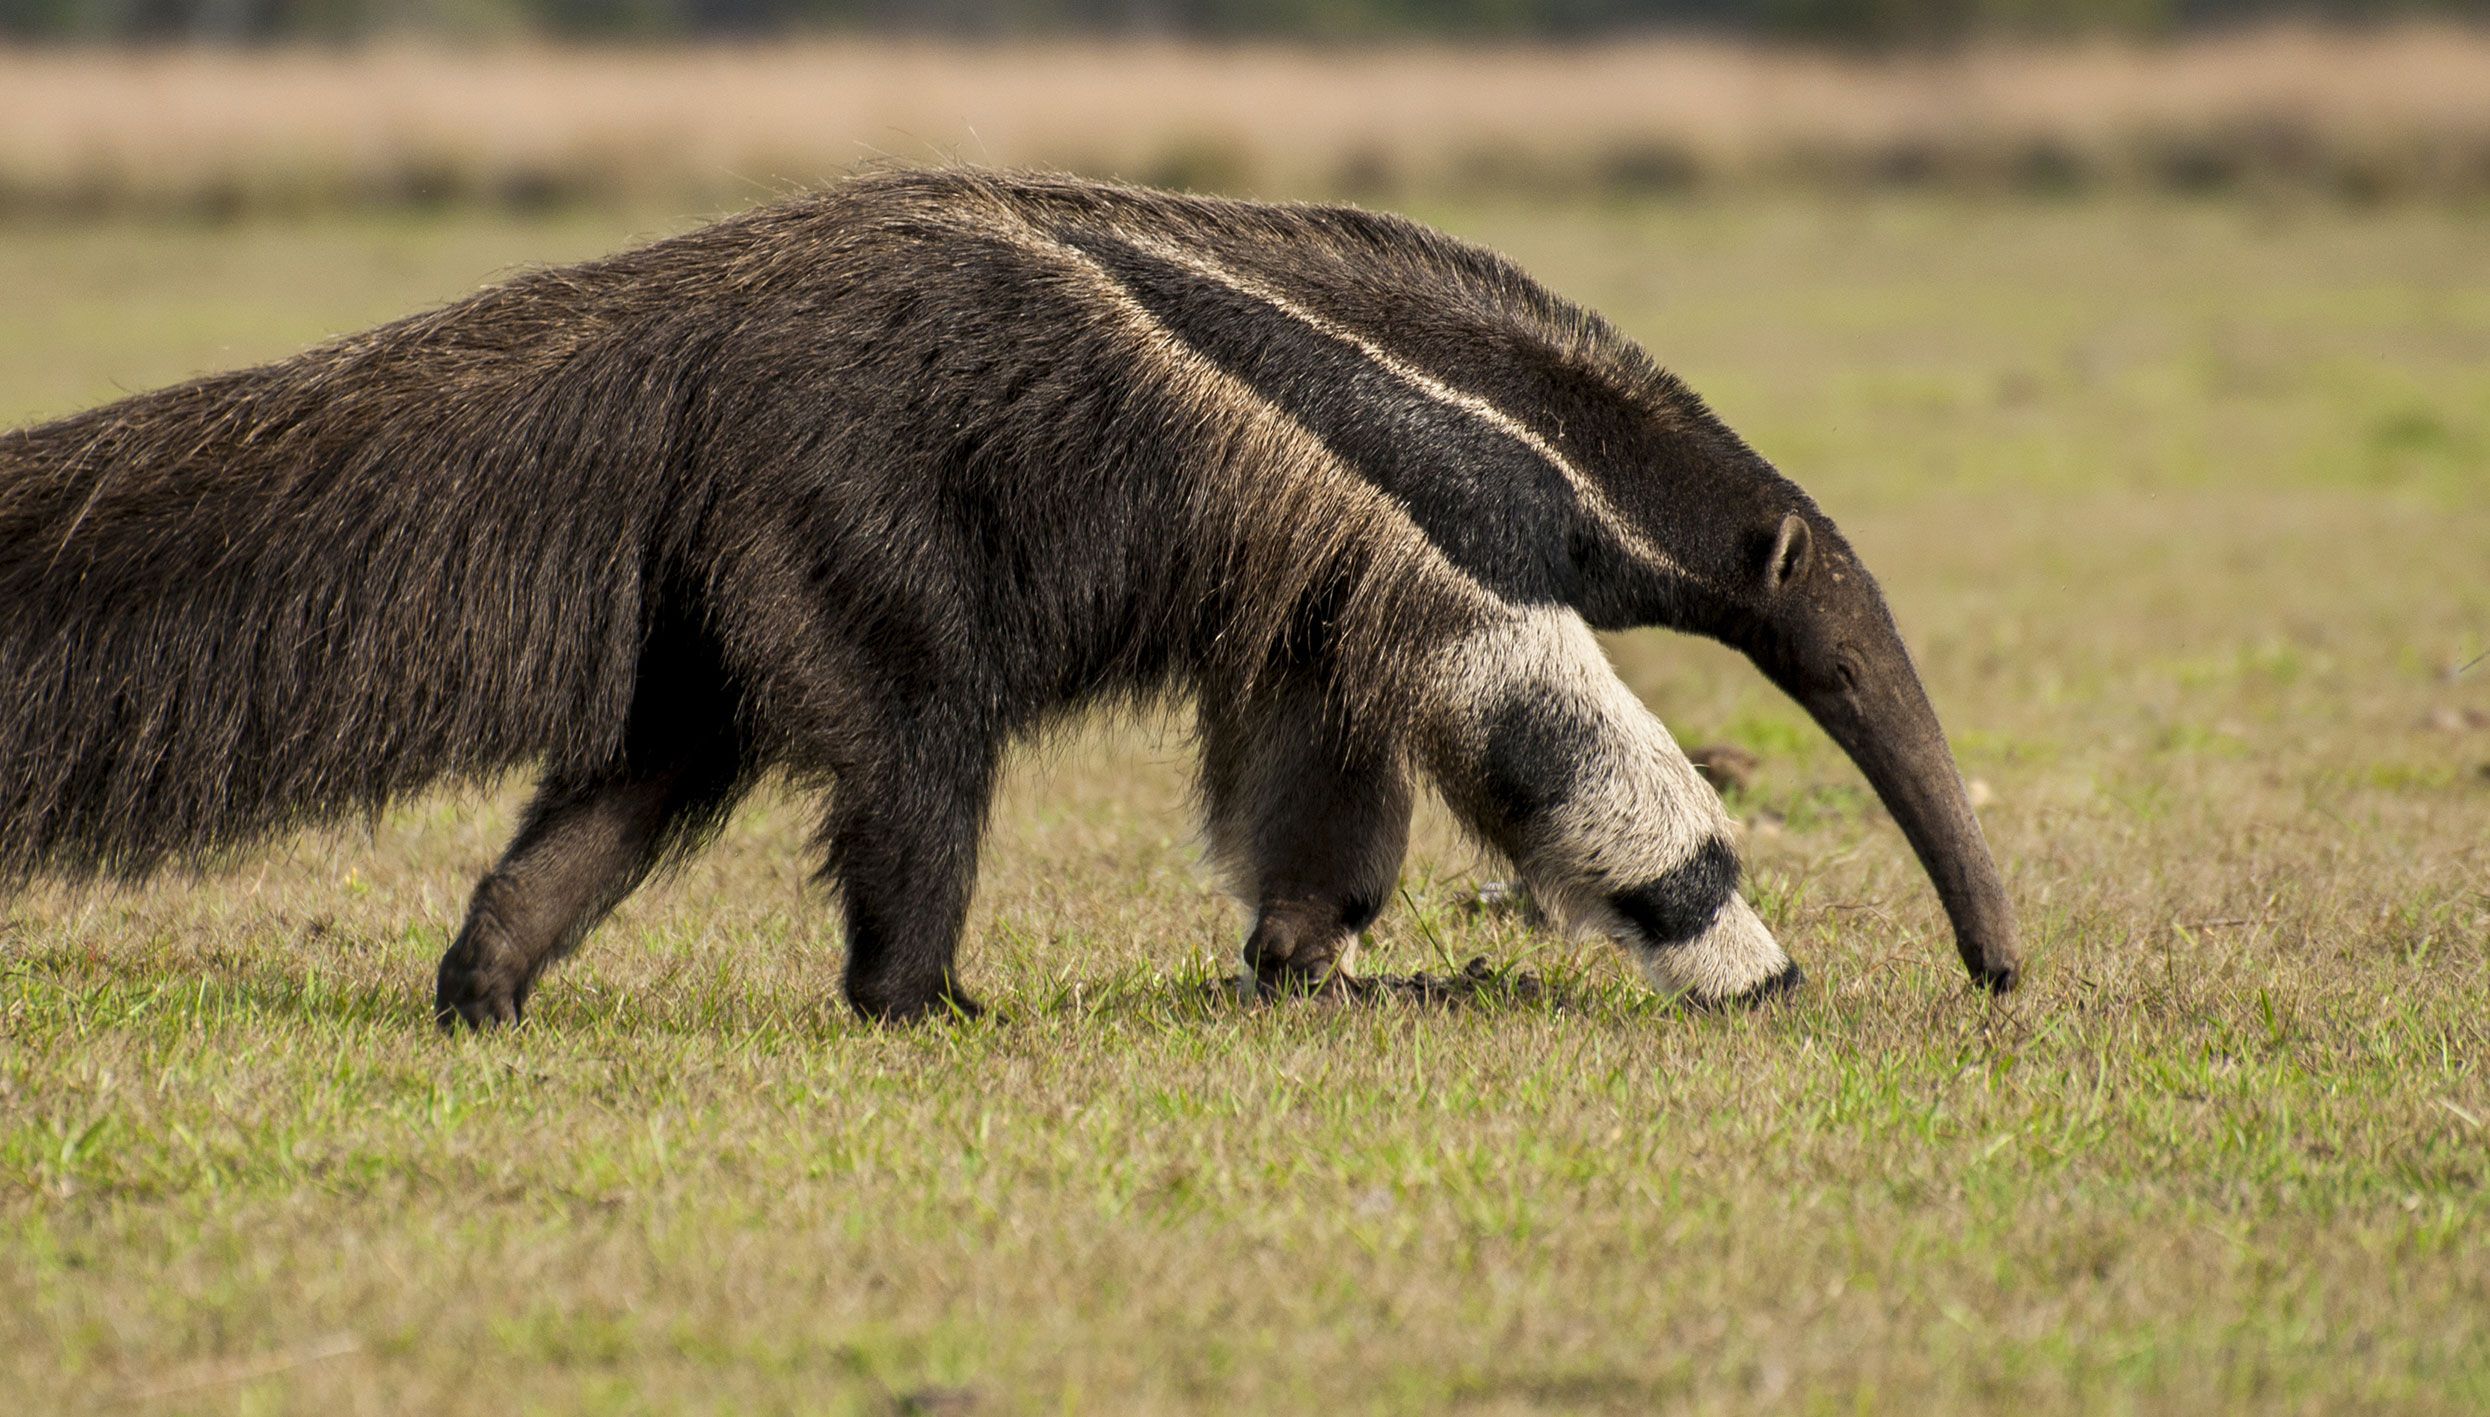 Giant-anteater-Luiz-Kagiyama-Shutterstock.